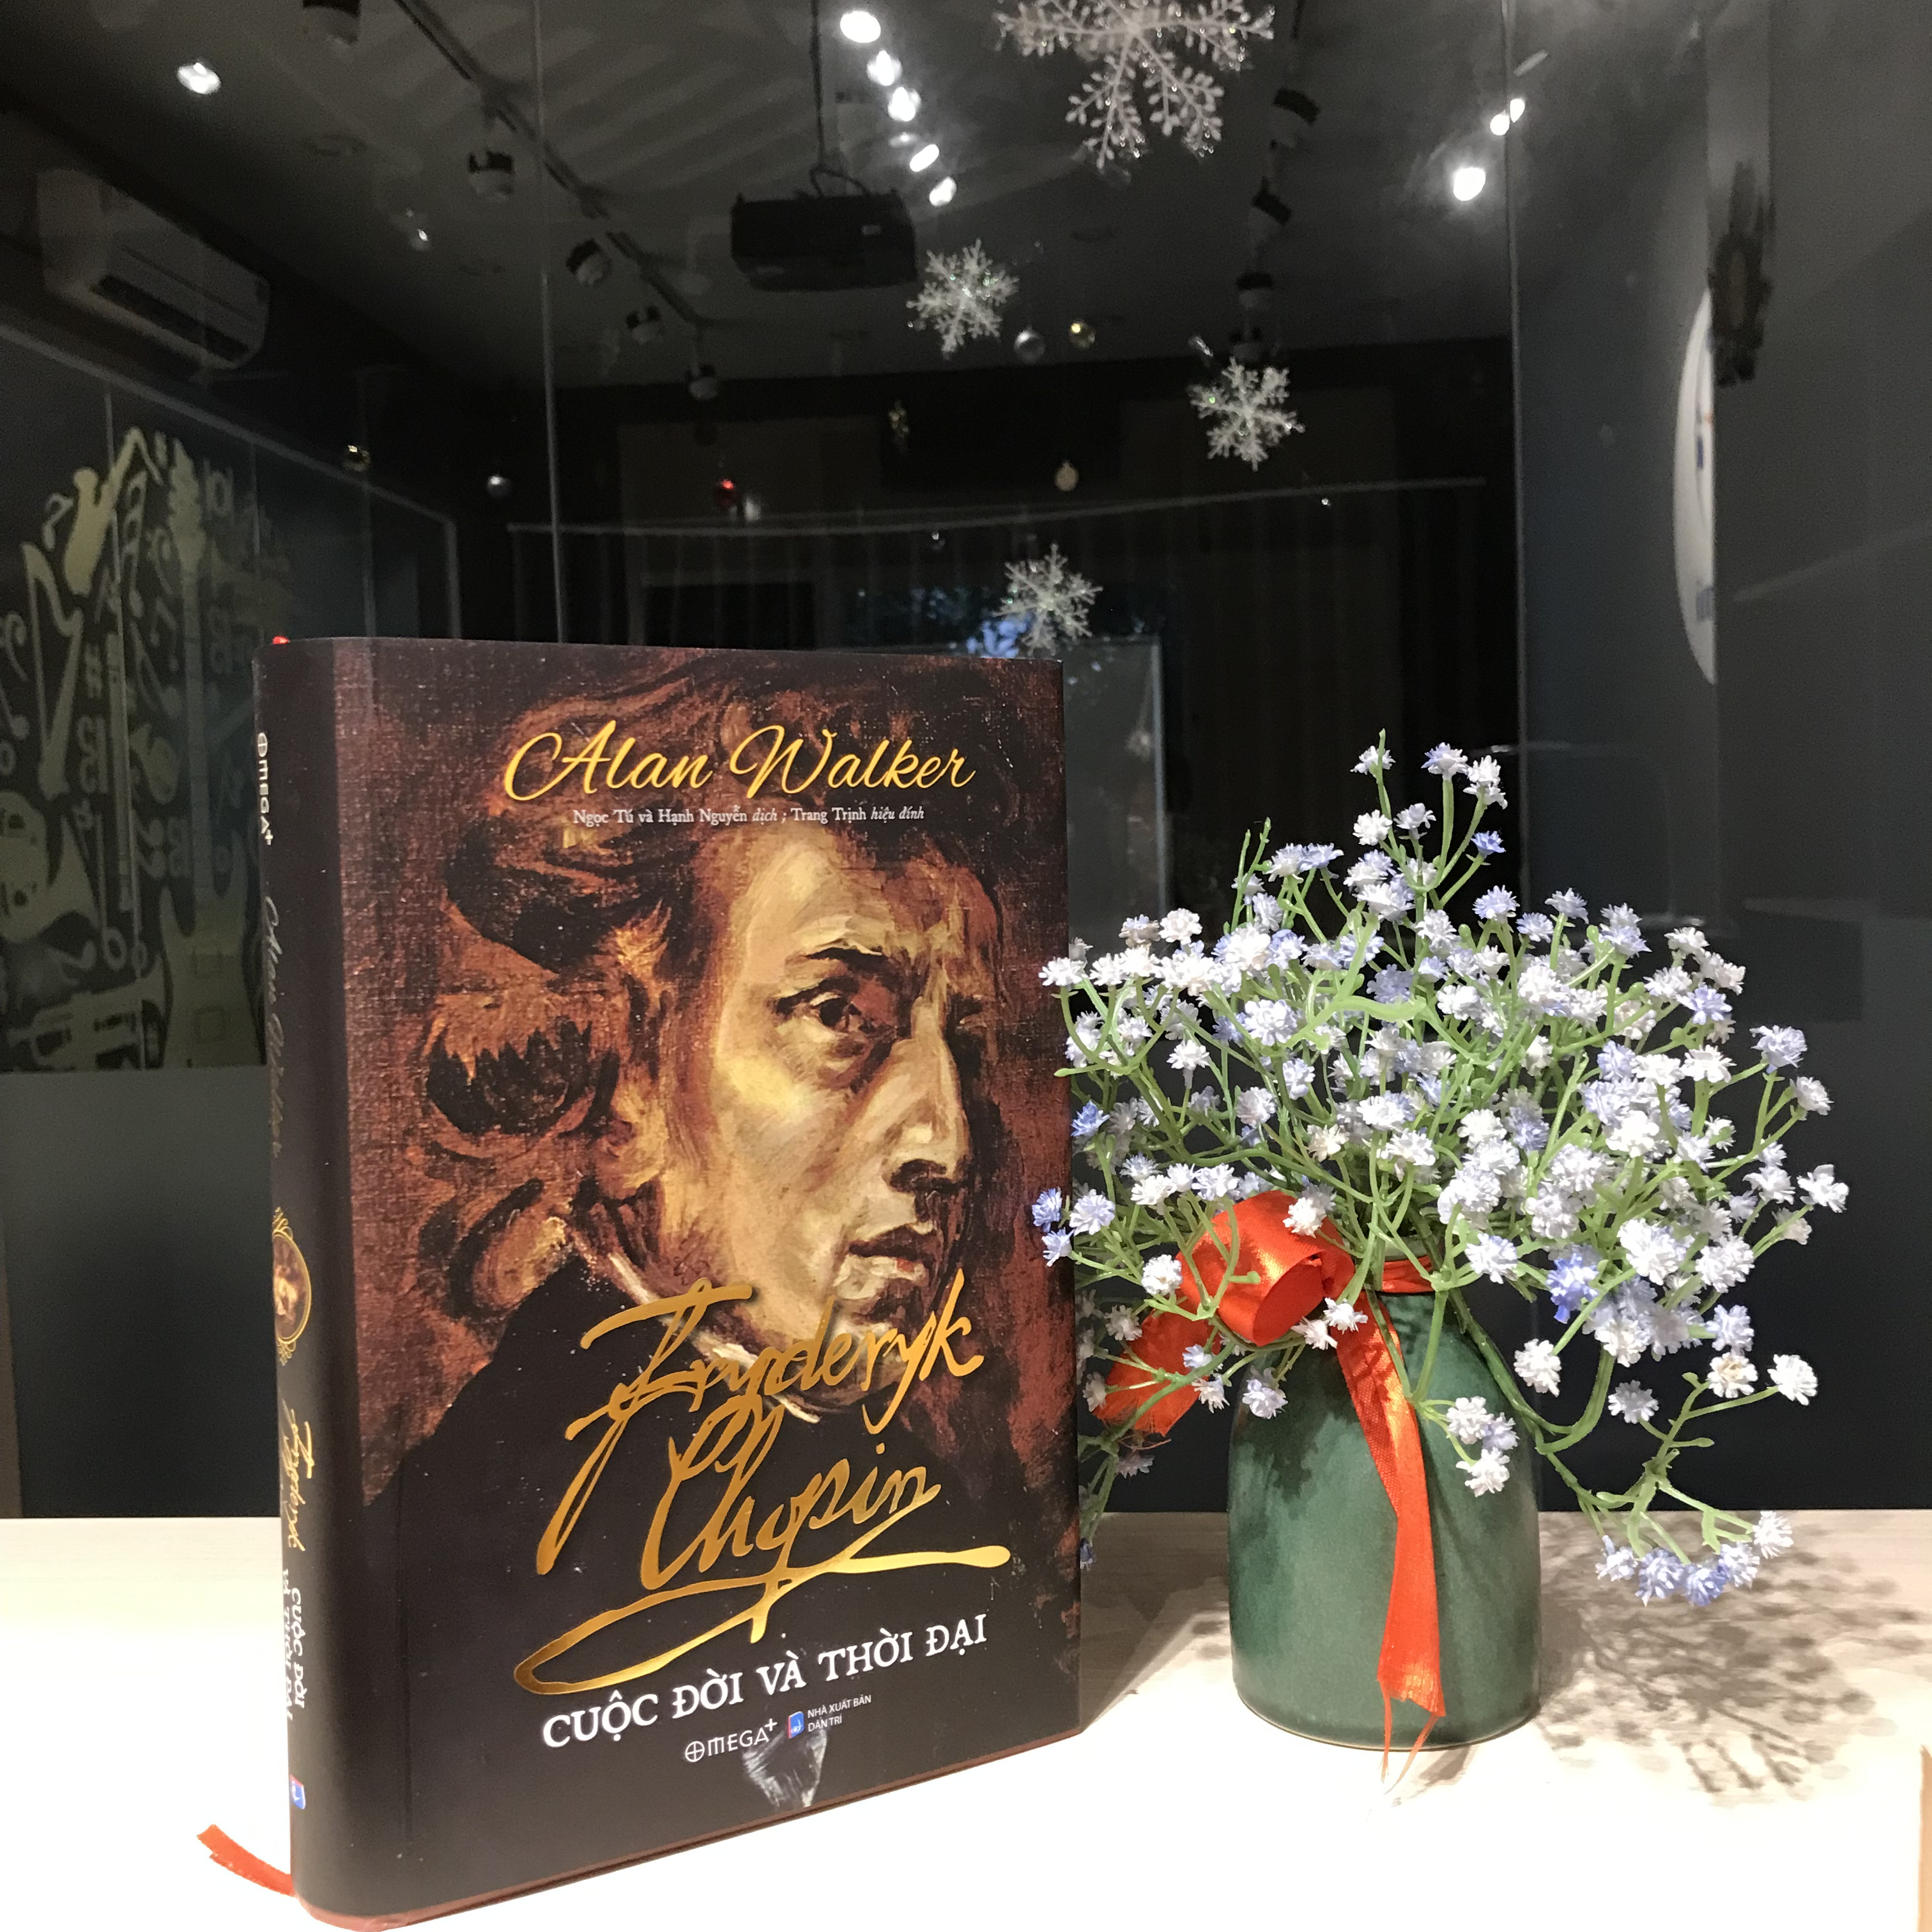 Xóa tan nhiều huyền thoại và truyền thuyết quanh Chopin - 3